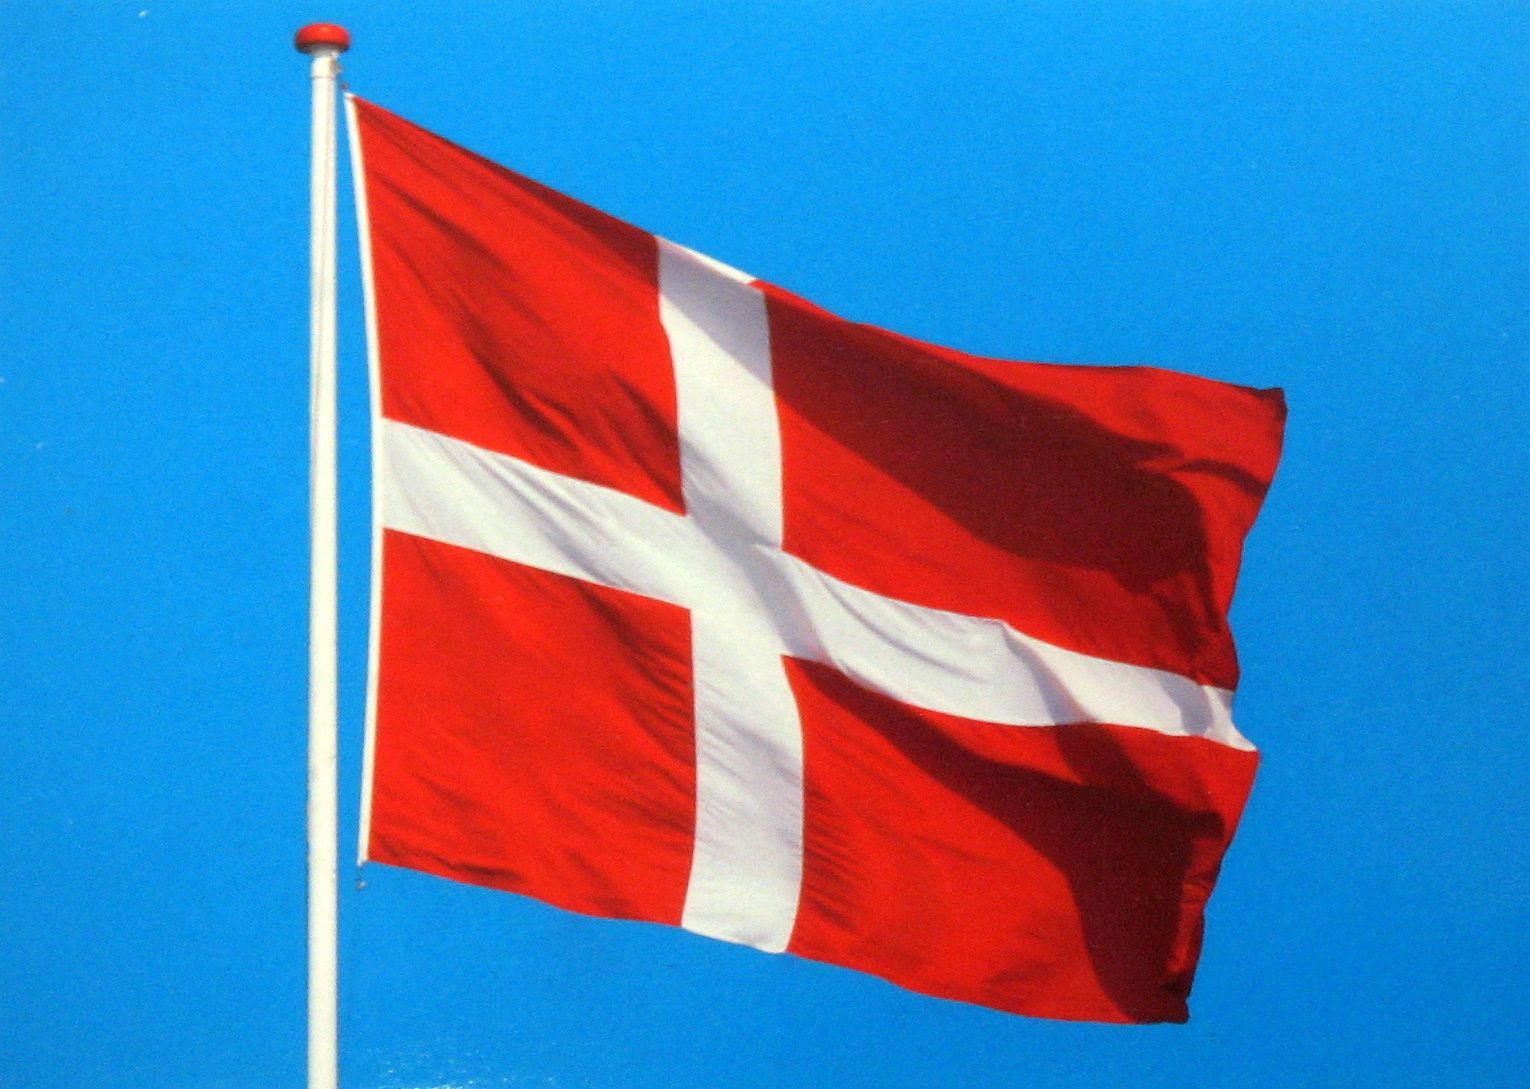 Danimarka’da Gabari Dışı Taşımalar İçin Yeni Sistem